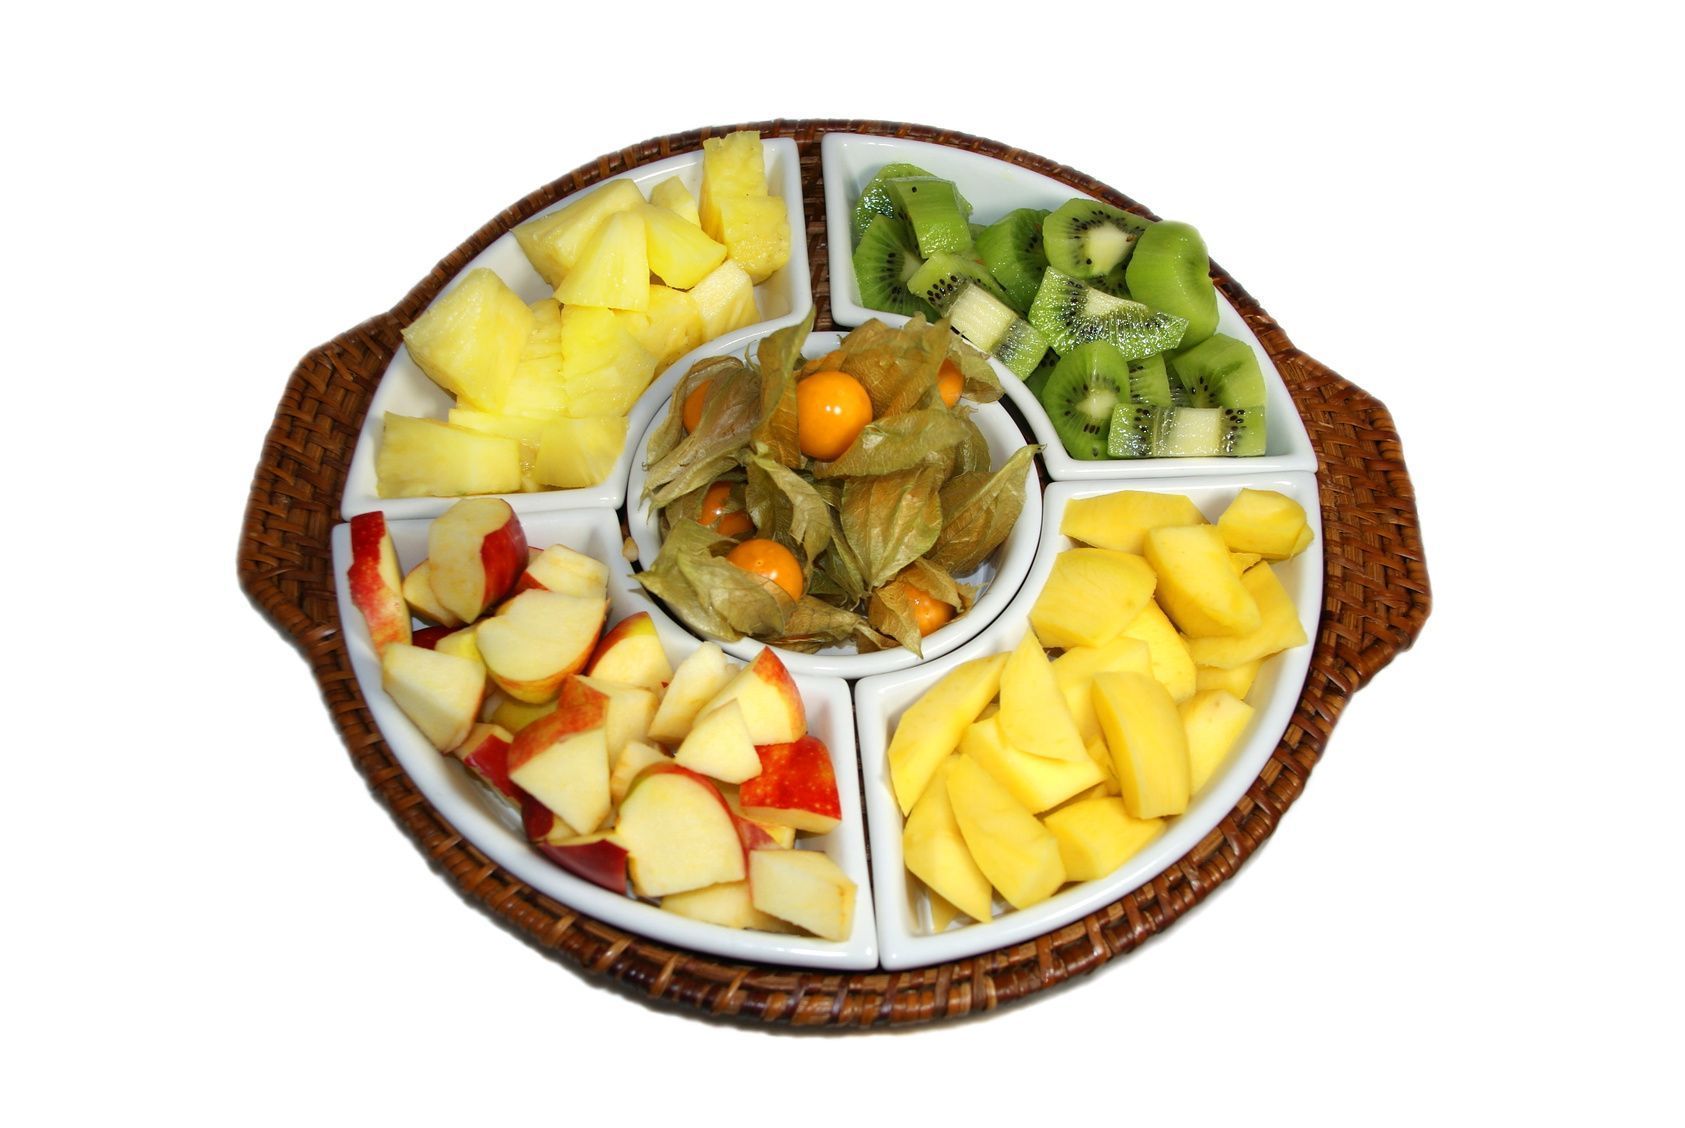 Fürs Schokofondue eignen sich im Winter vor allem frische Früchte, die's das ganze Jahr über gibt.